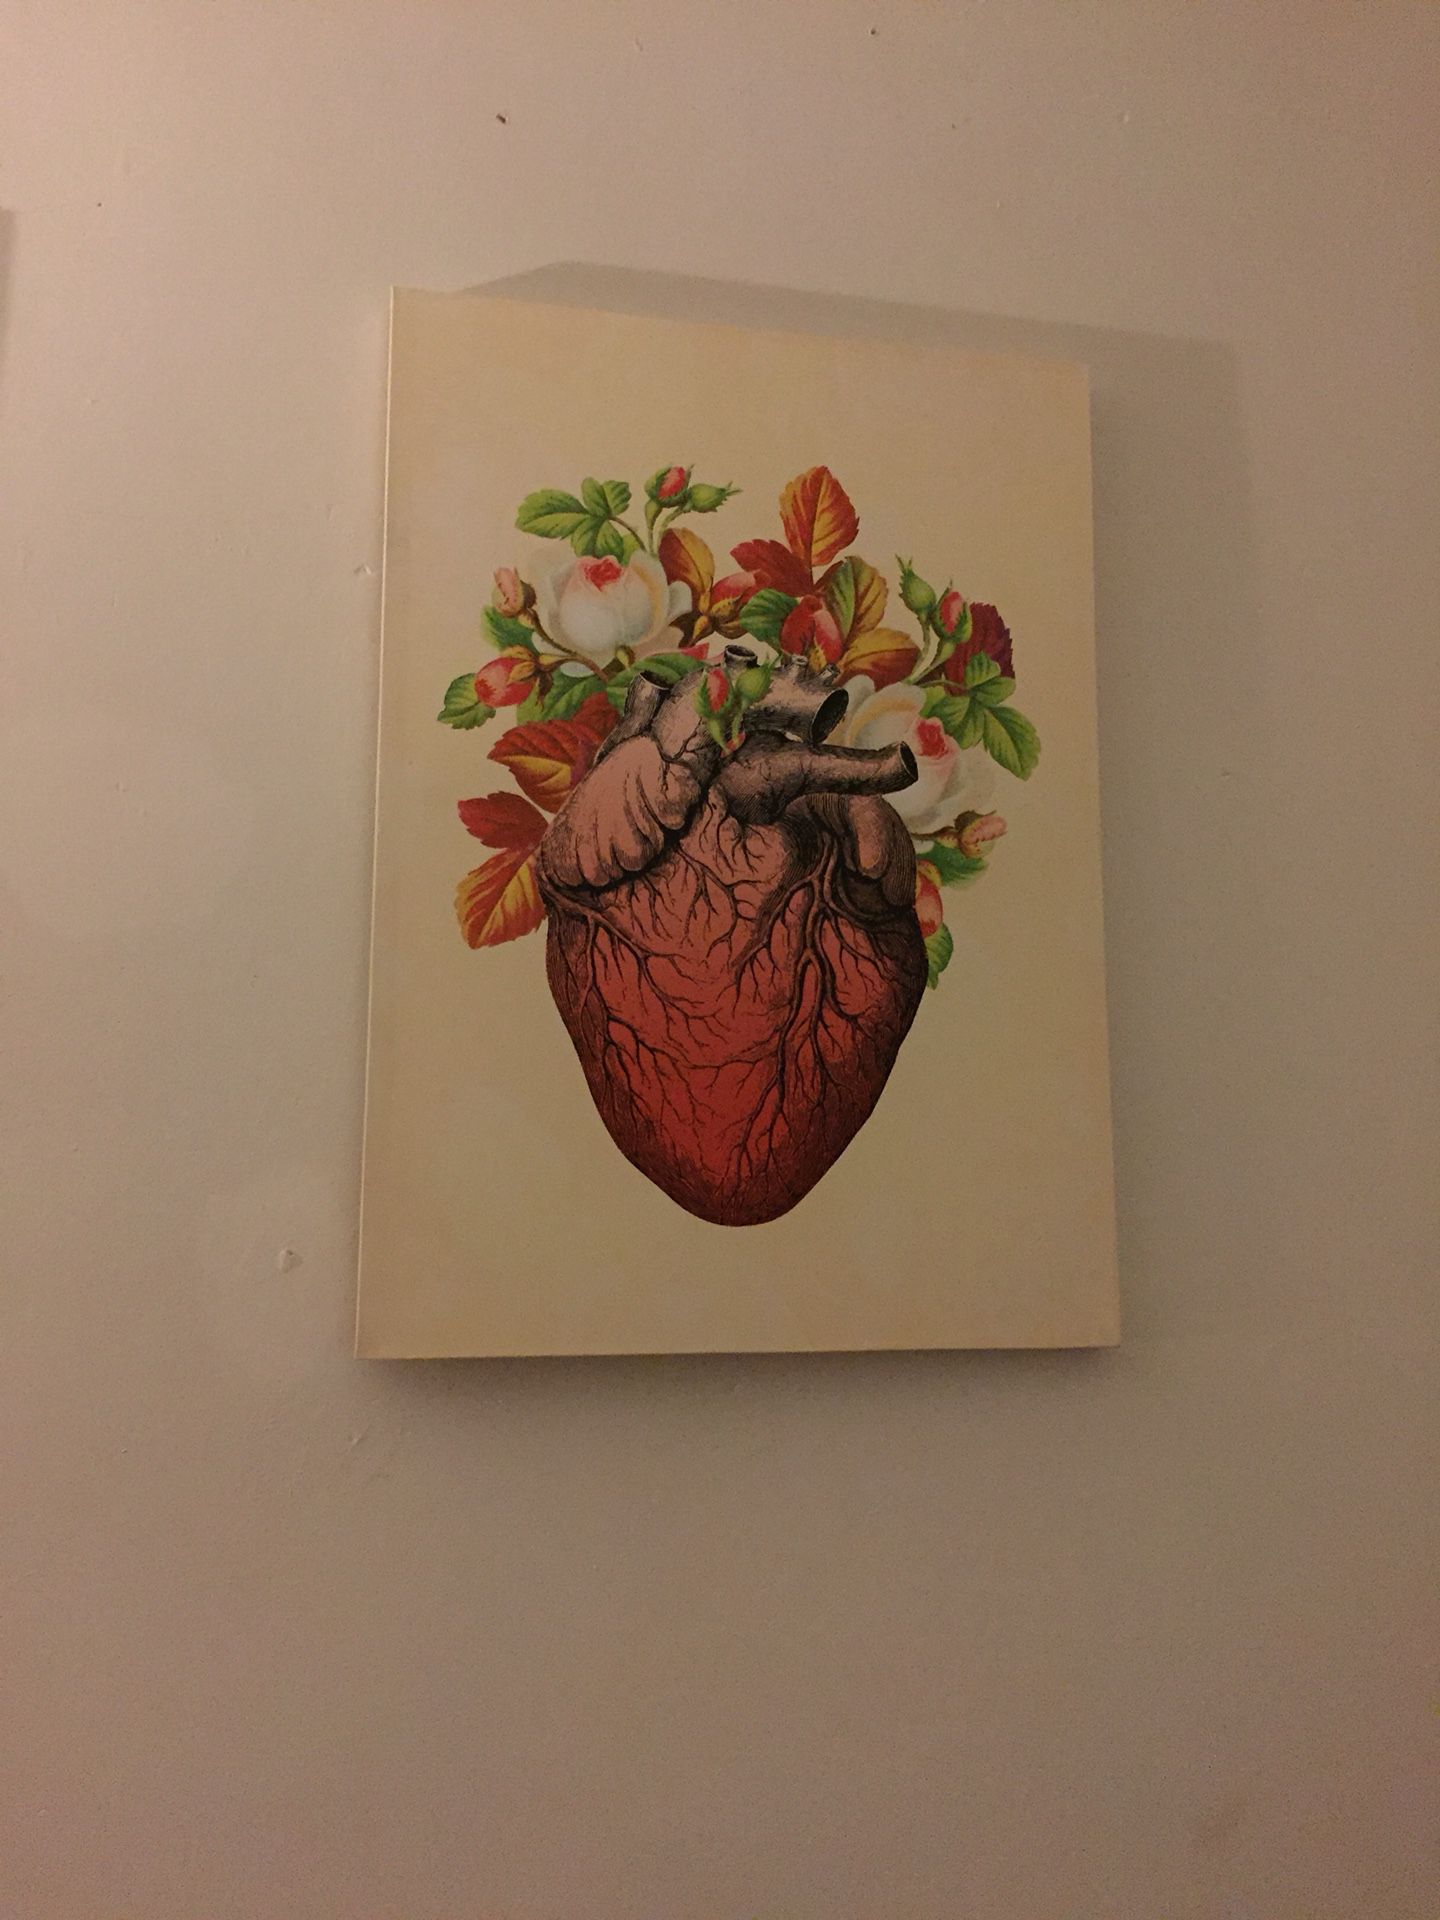 Heart art piece